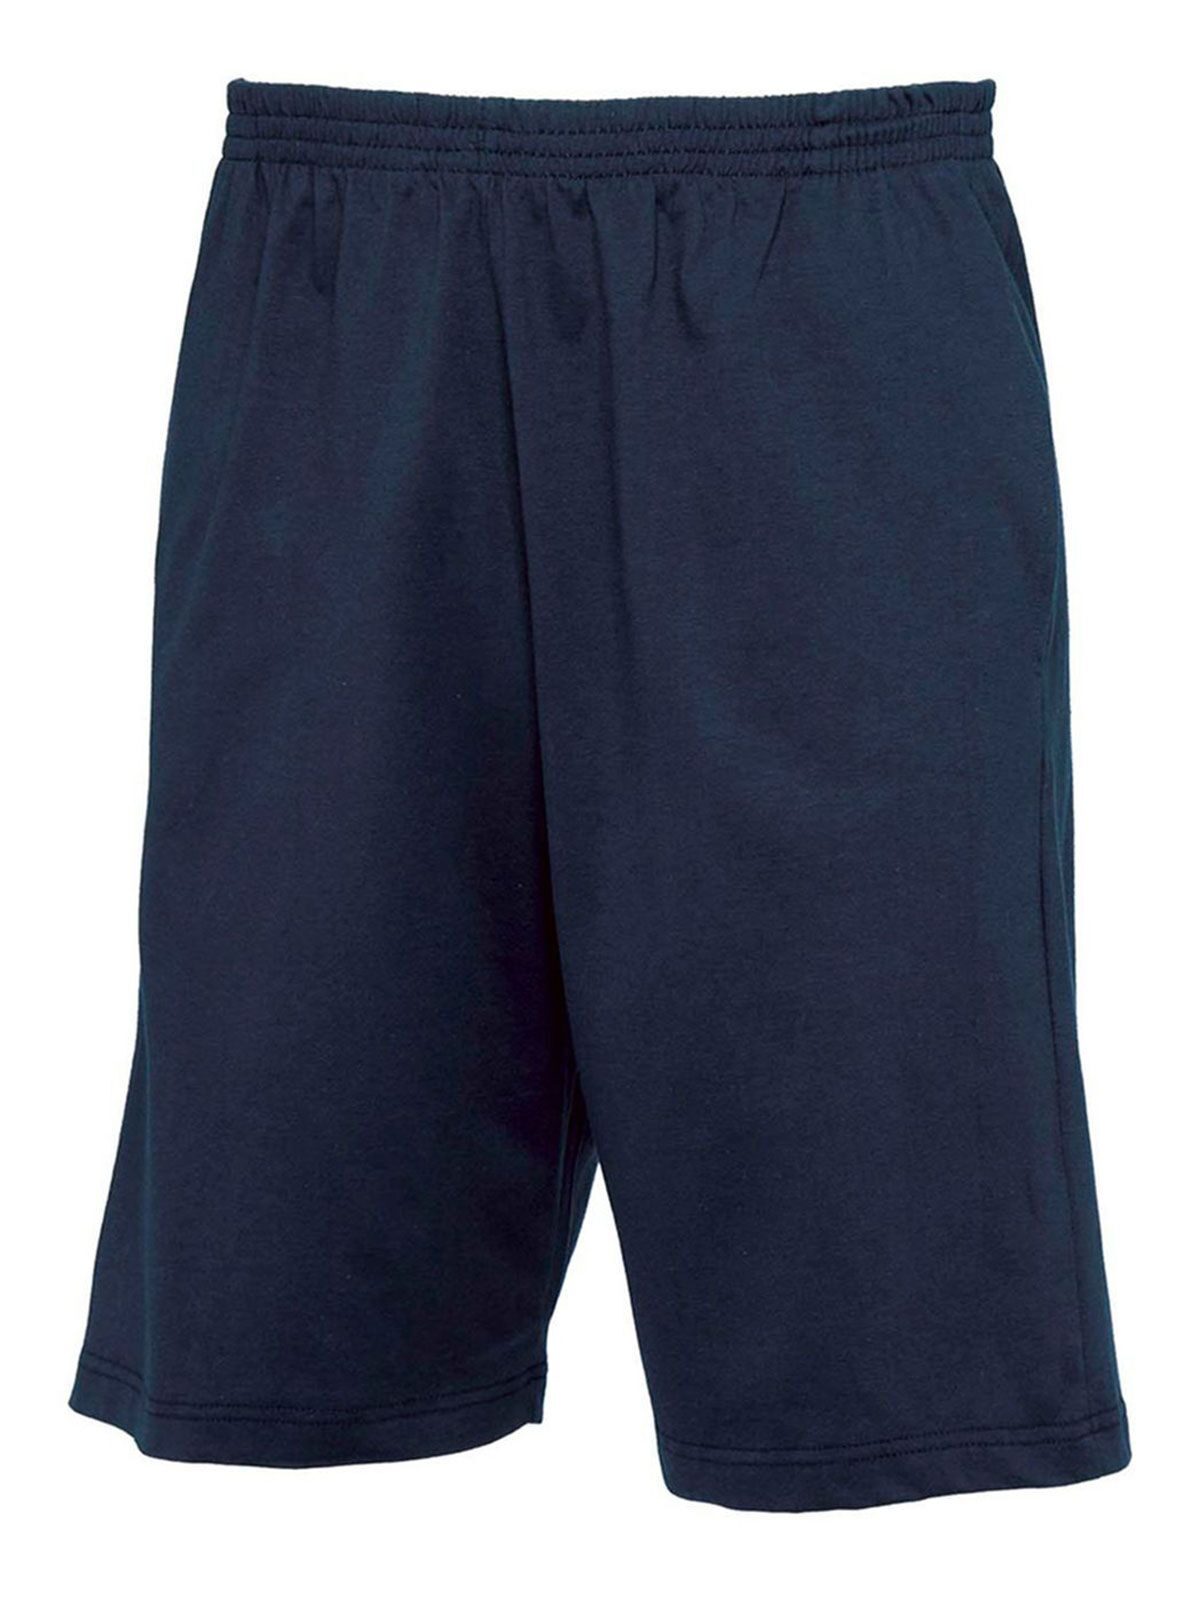 B&C Pantaloni Shorts Move - BCTM202